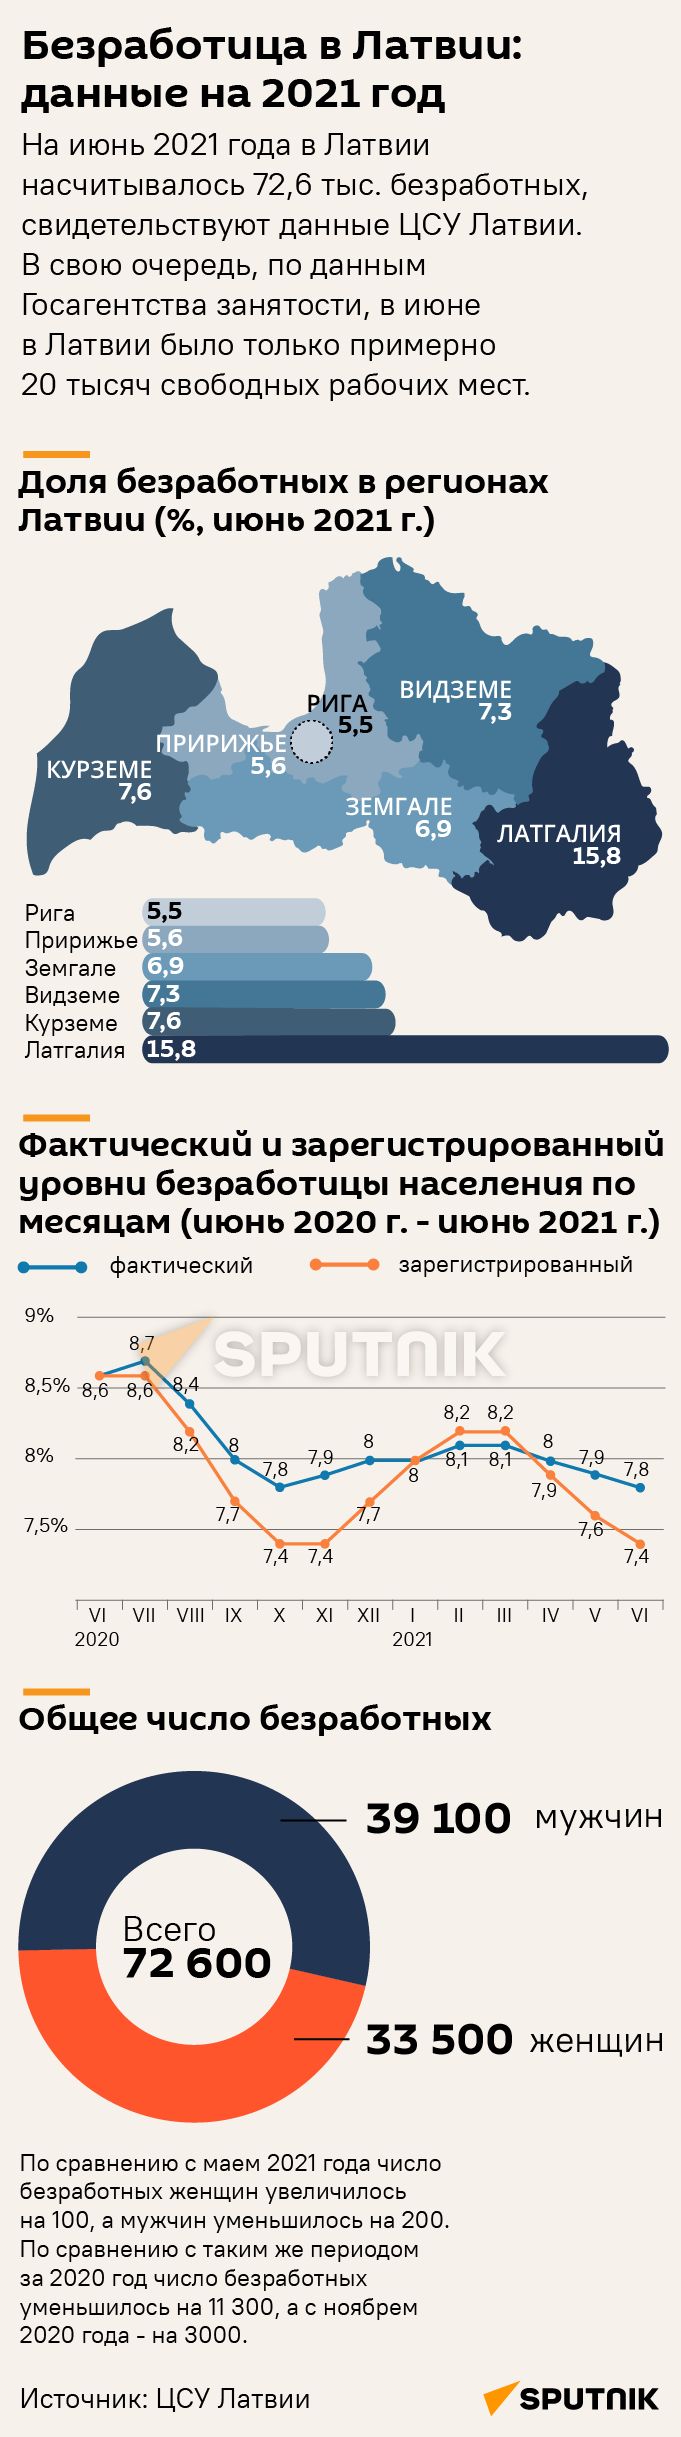 Безработица в Латвии: данные на 2021 год - Sputnik Латвия